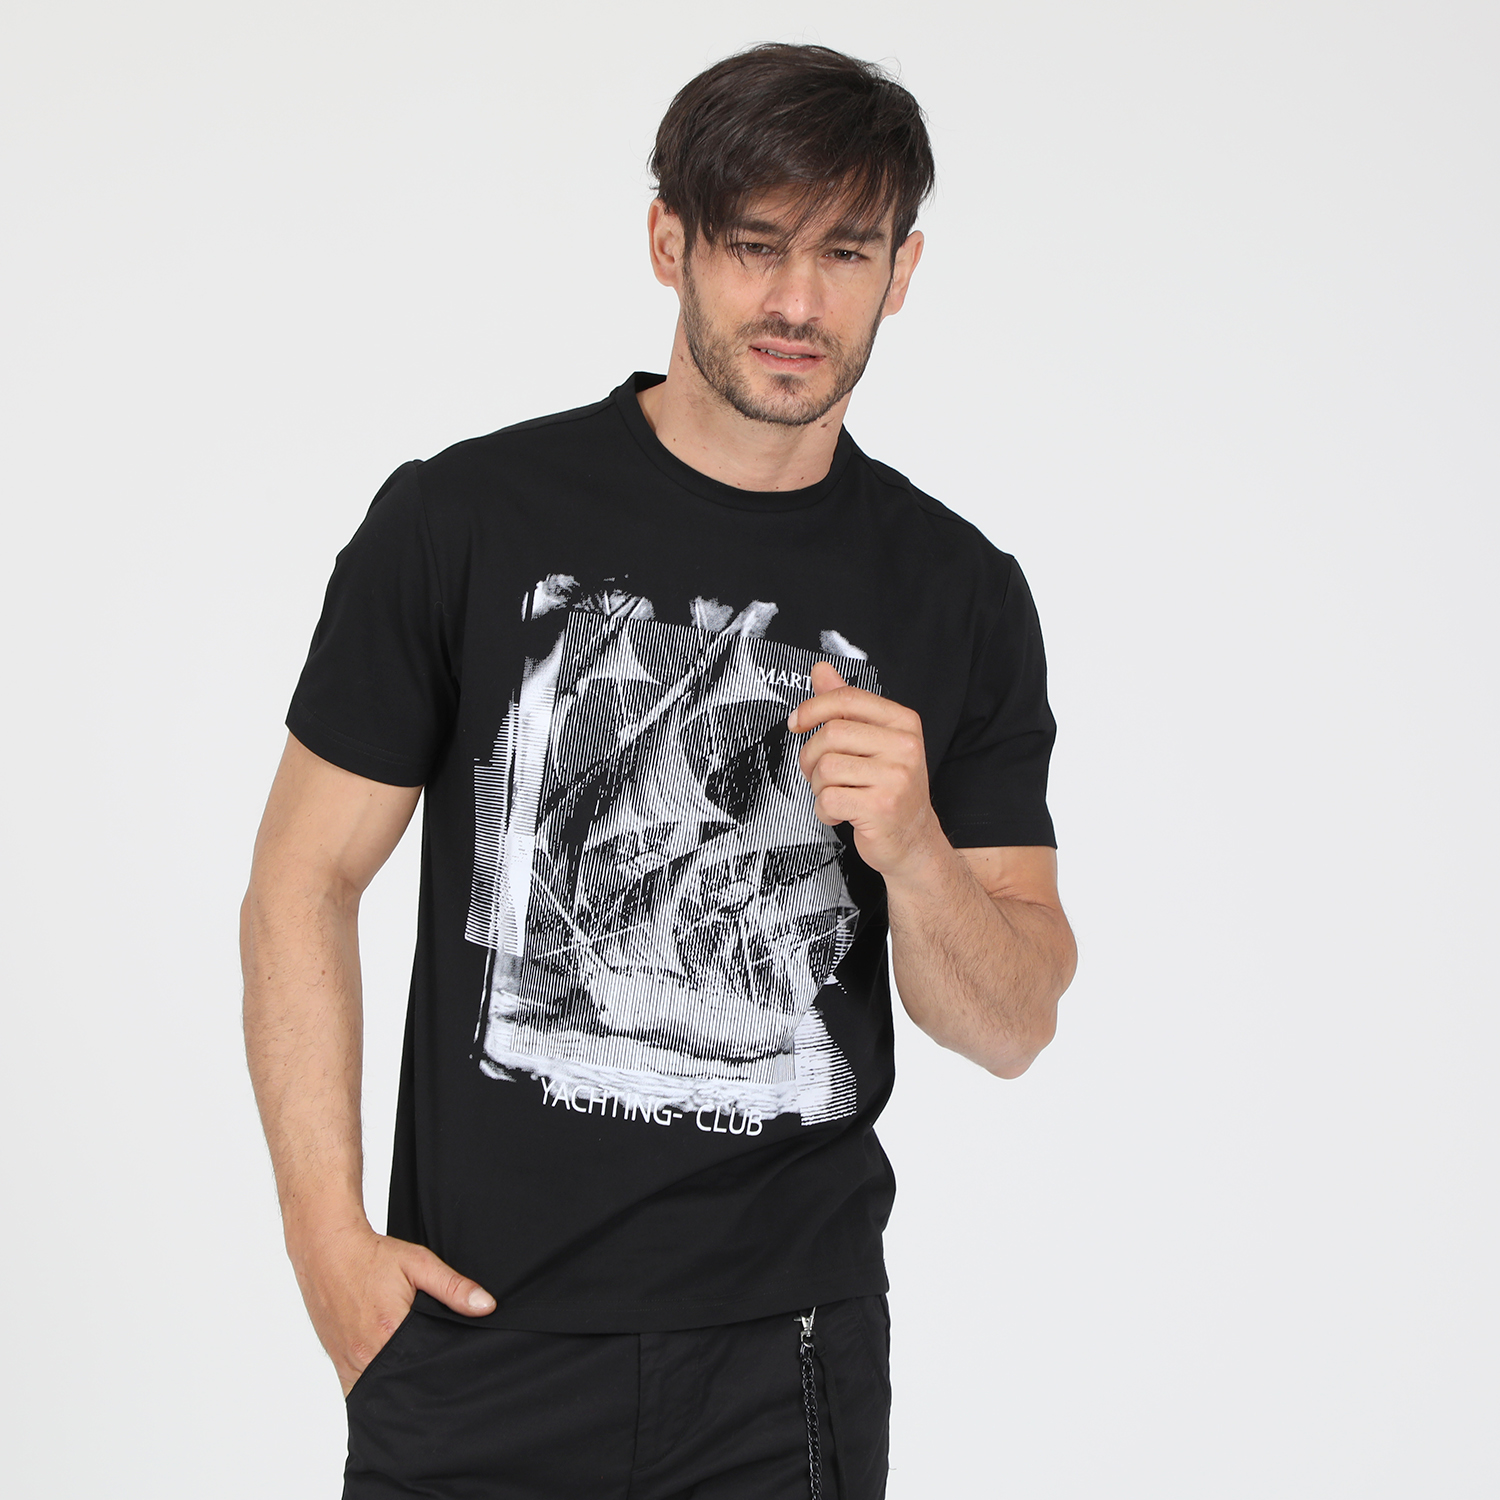 Ανδρικά/Ρούχα/Μπλούζες/Κοντομάνικες MARTIN & CO - Γυναικείο t-shirt MARTIN & CO μαύρο